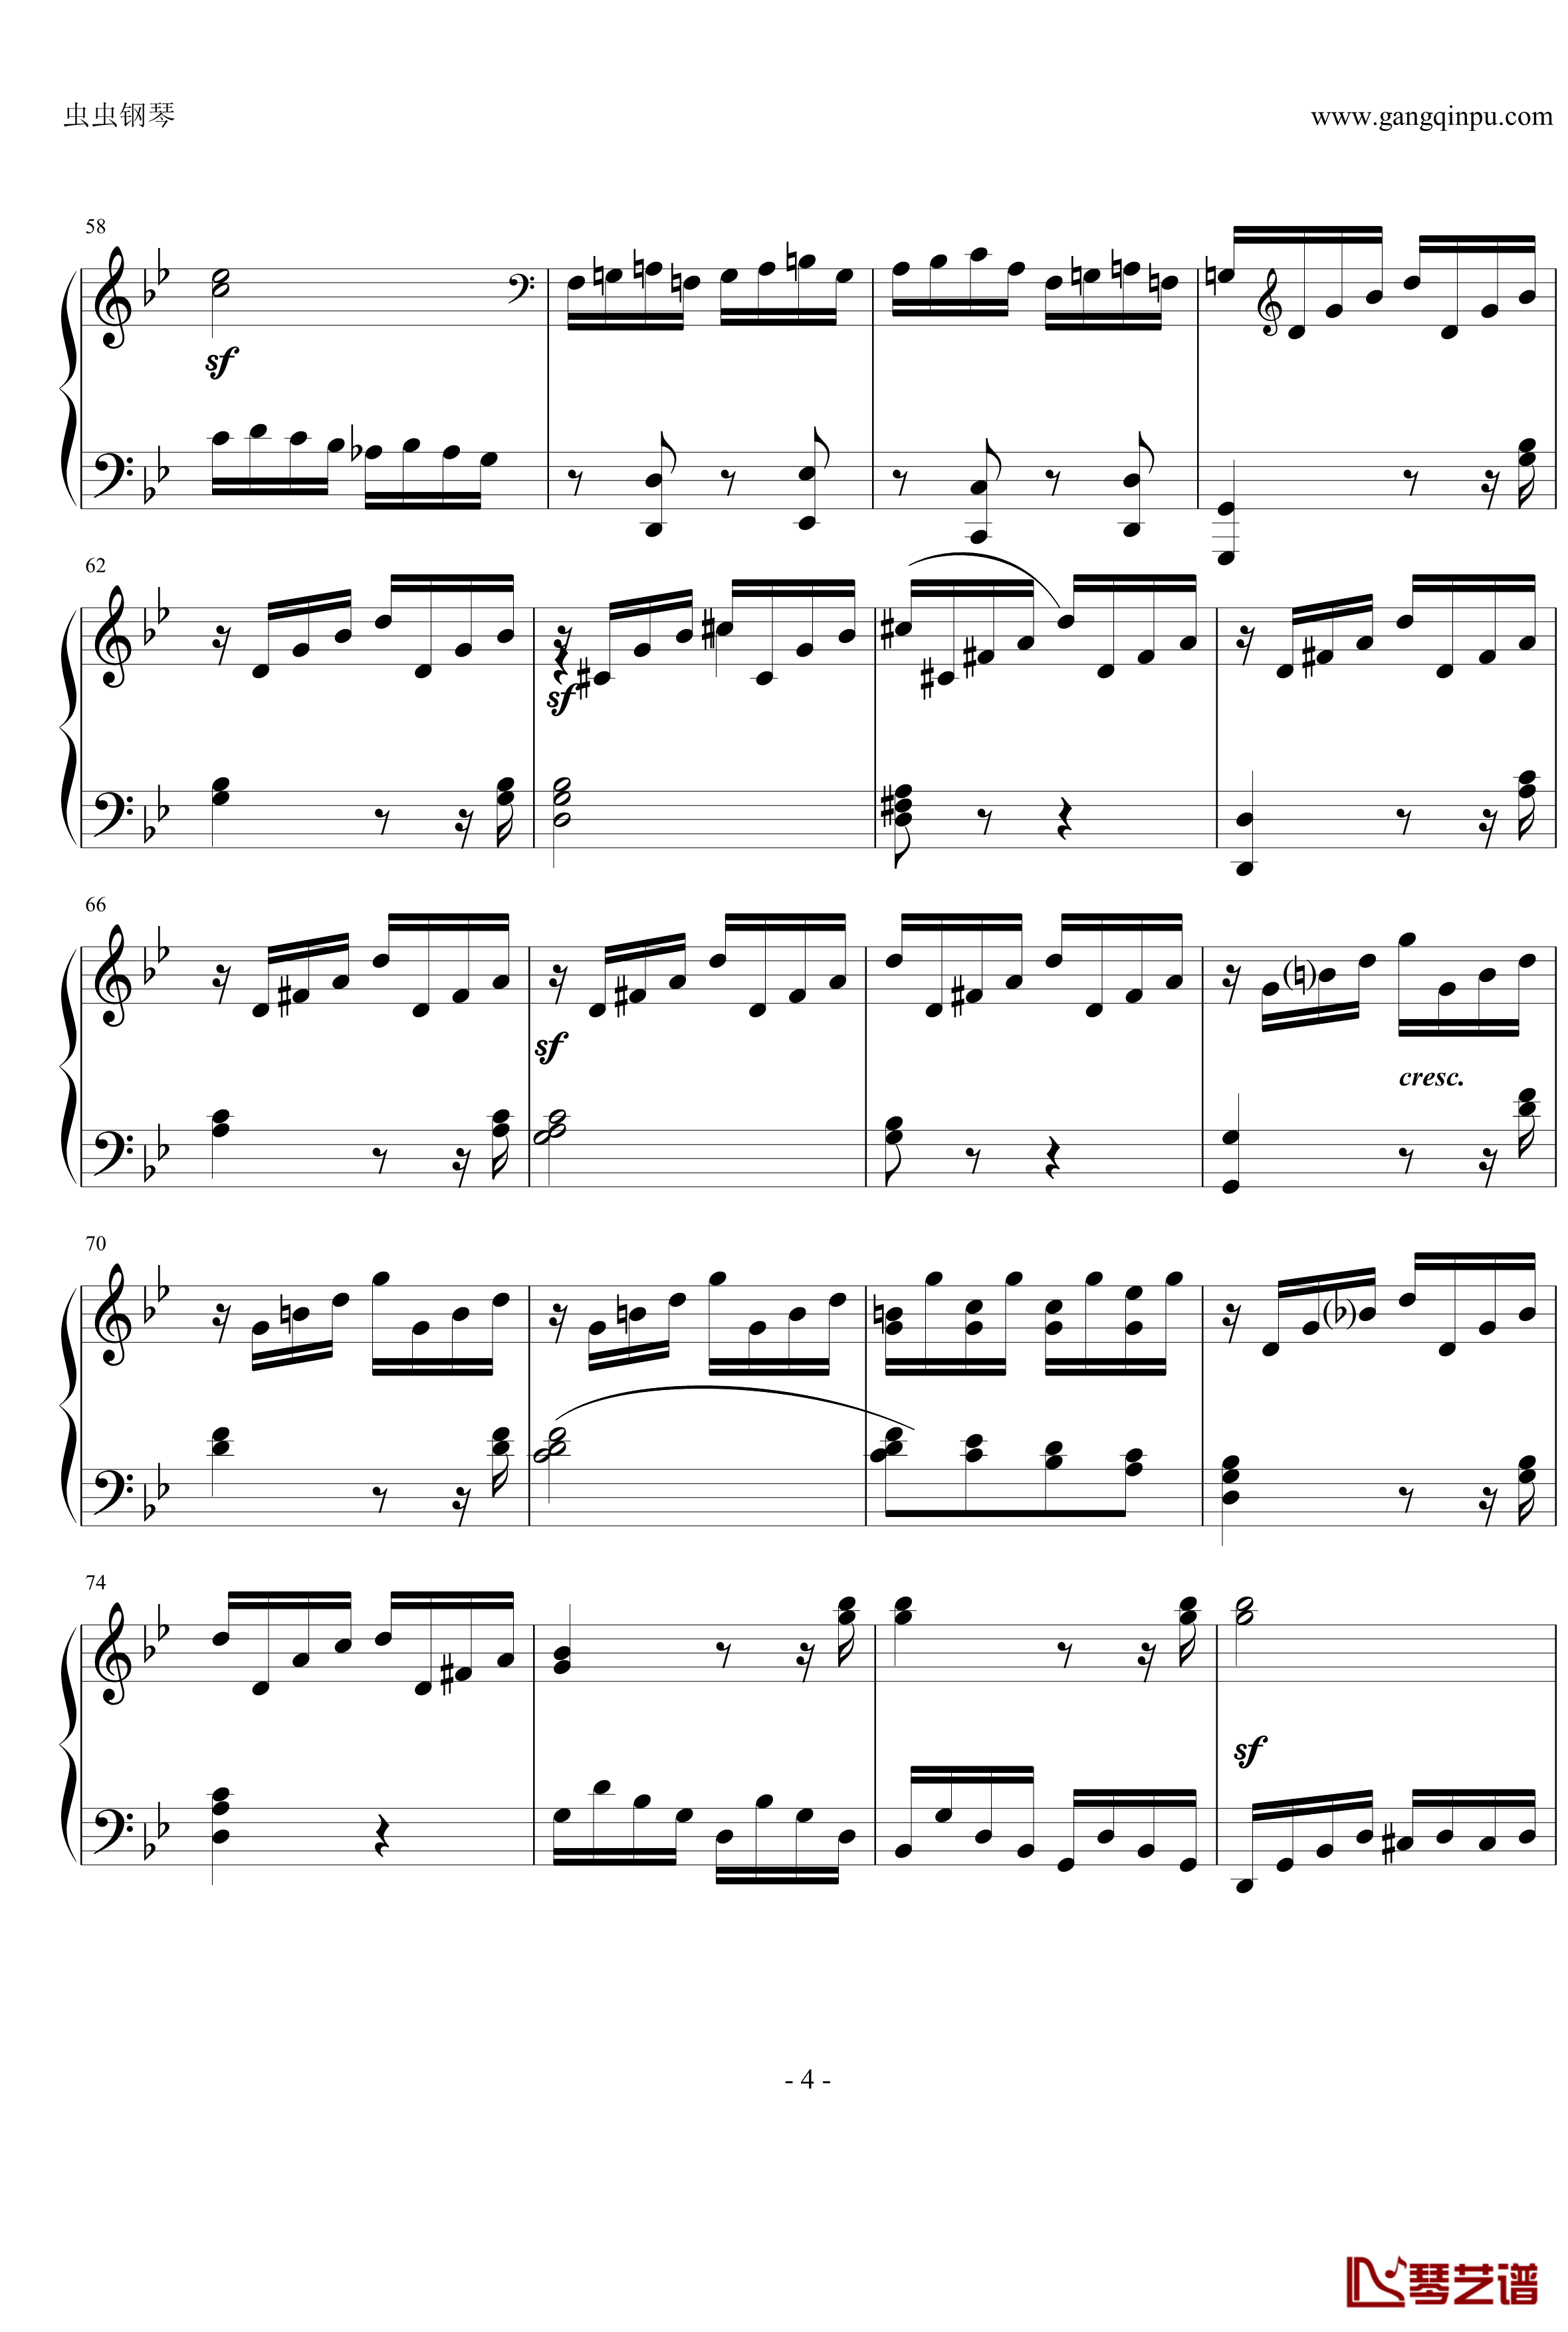 热情奏鸣曲钢琴谱-第三乐章简化改编版-贝多芬-beethoven4